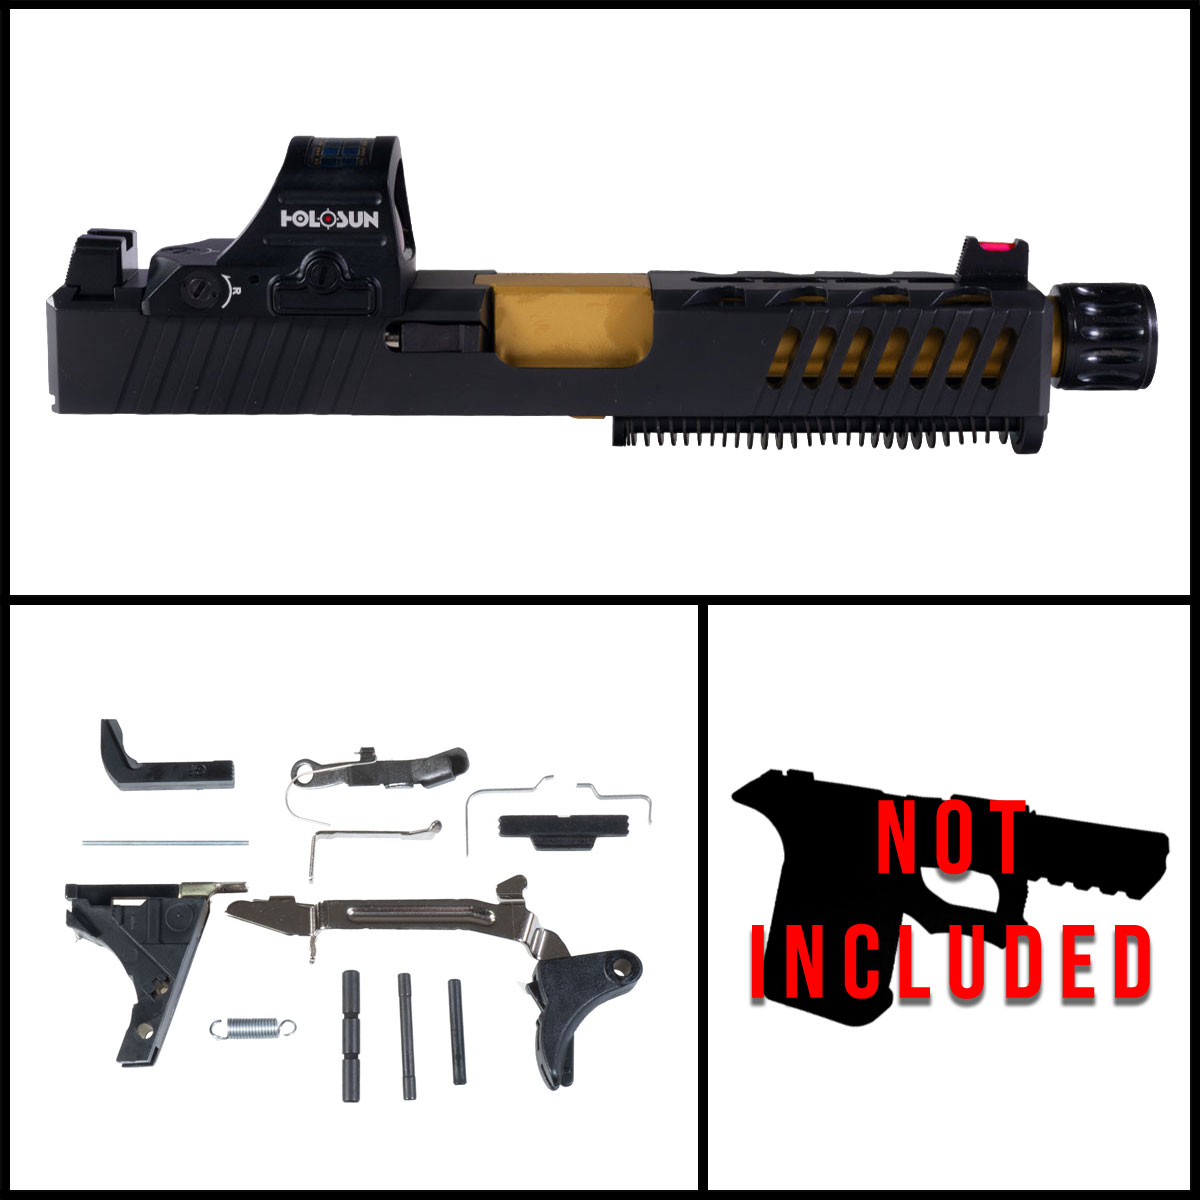 MMC 'Festina Lente w/ HS507C-X2 Red Dot' 9mm Full Pistol Build Kit (Everything Minus Frame) - Glock 19 Gen 1-3 Compatible